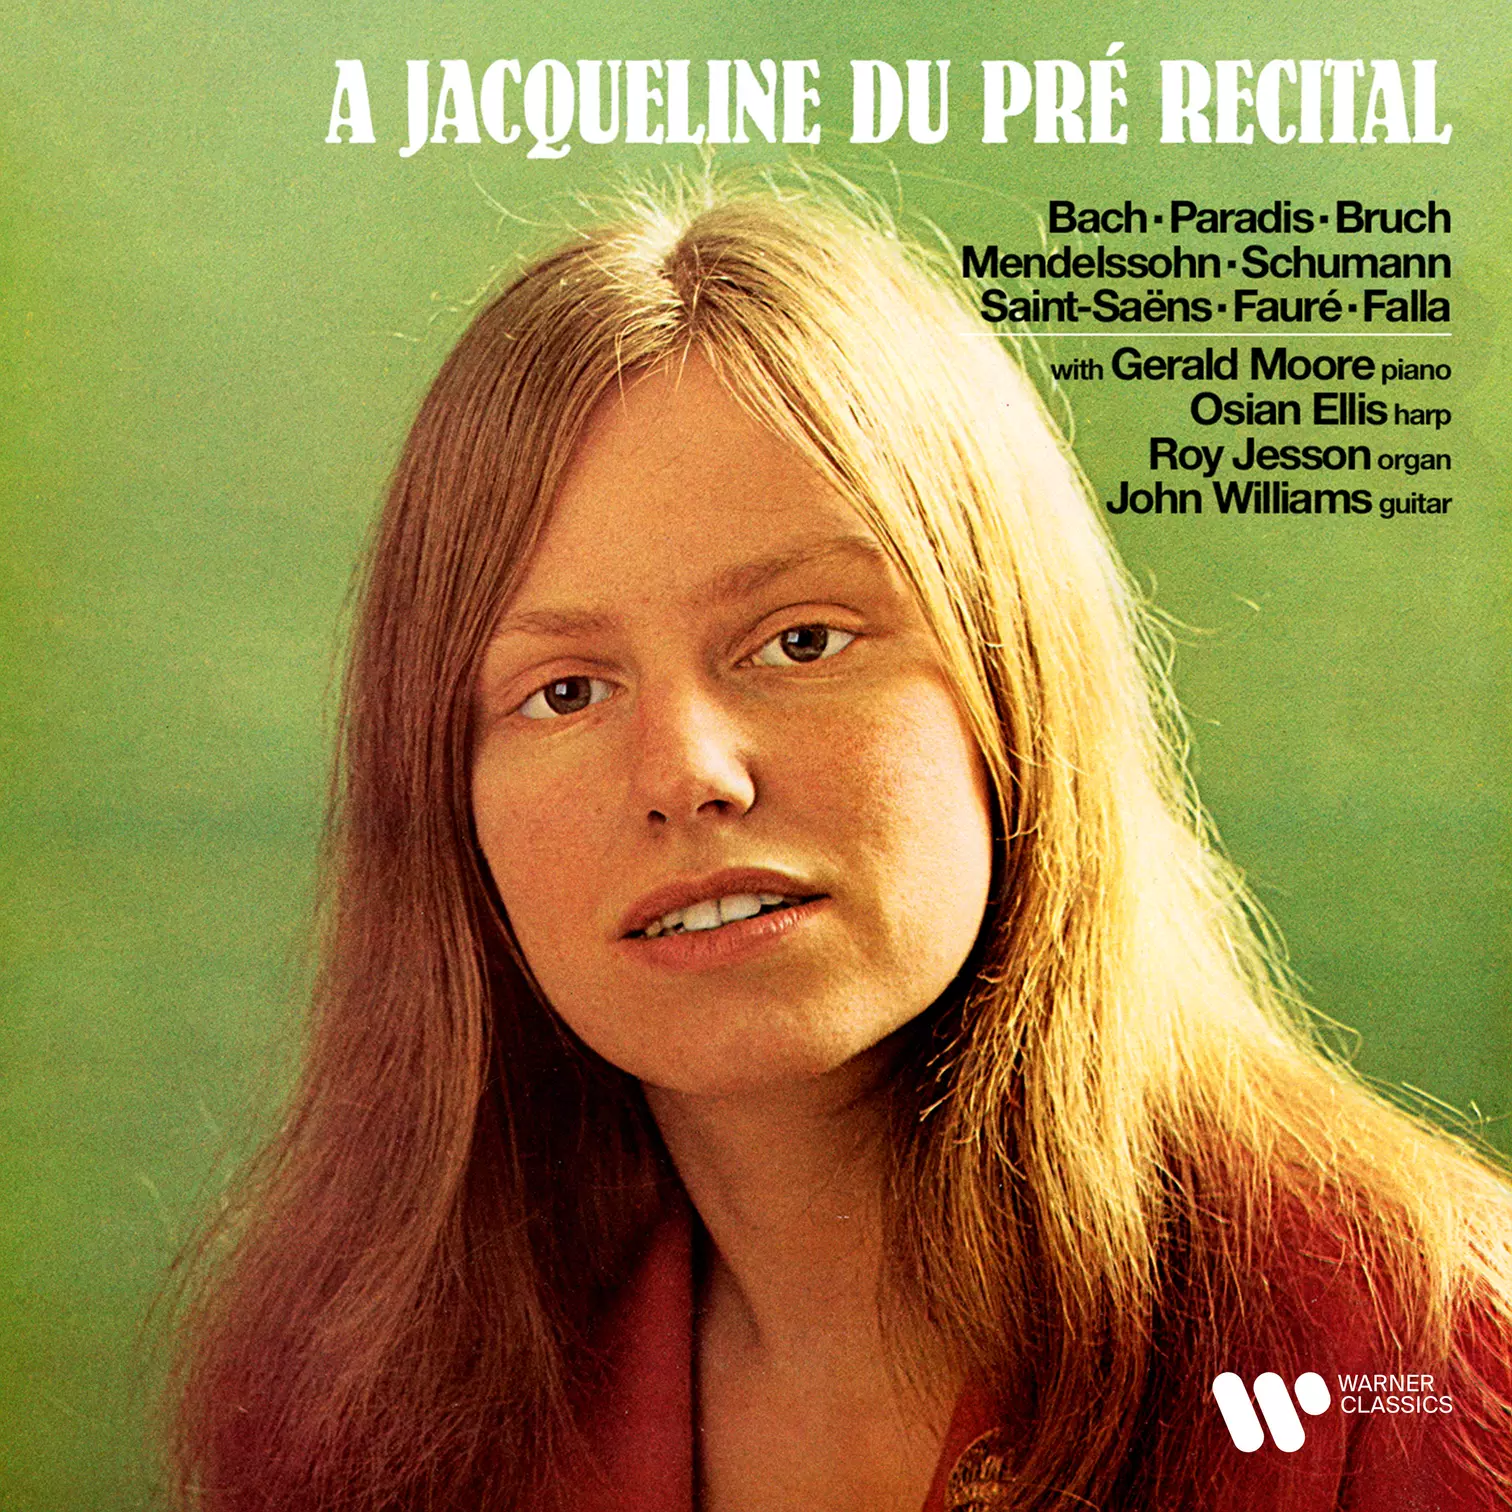 A Jacqueline du Pré Recital